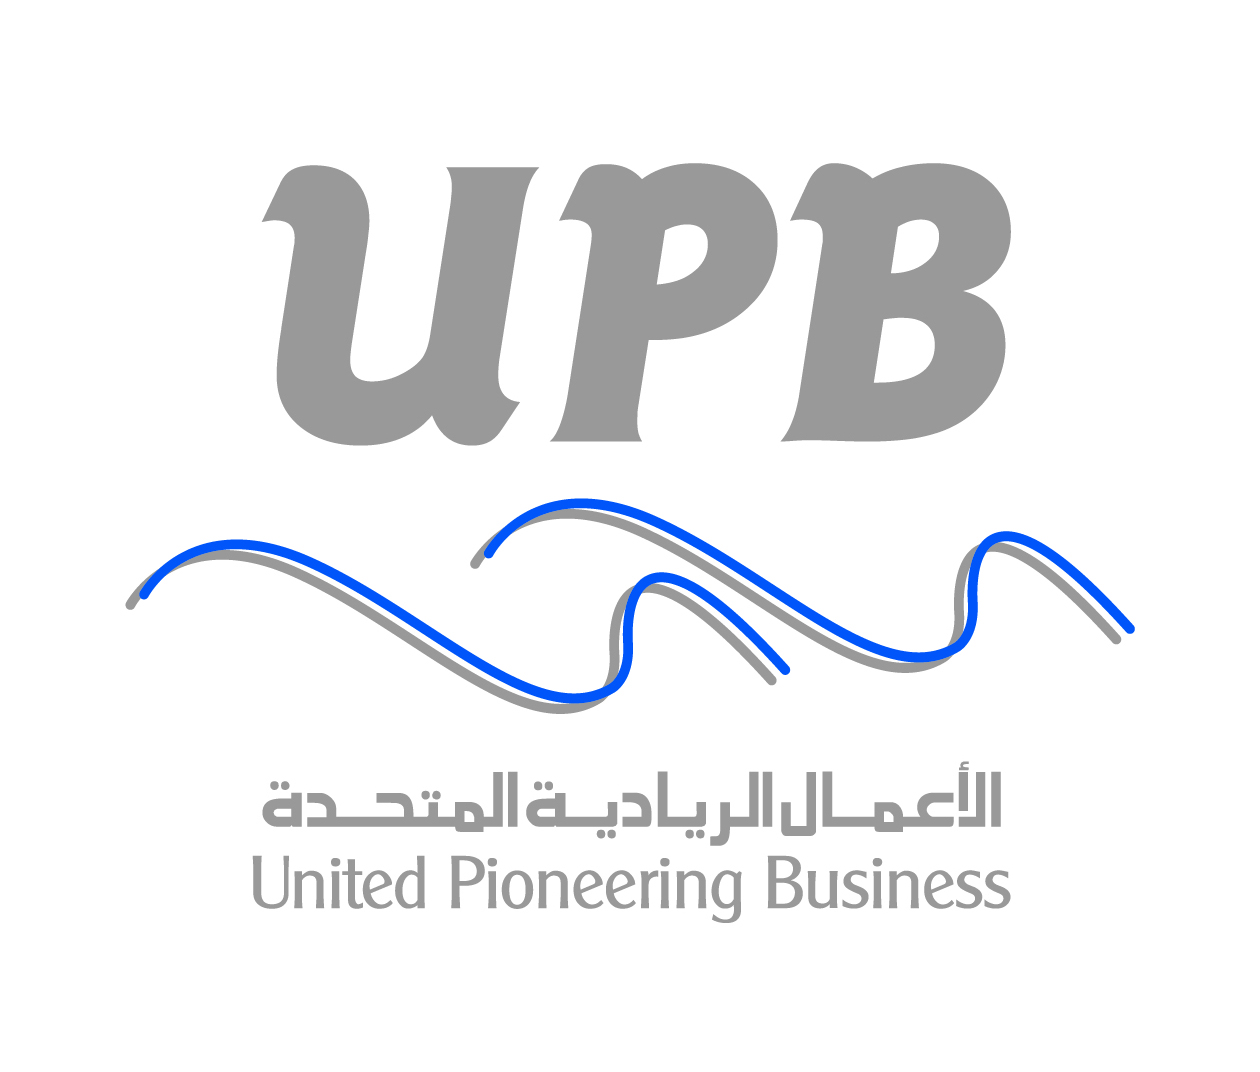 UPB logo